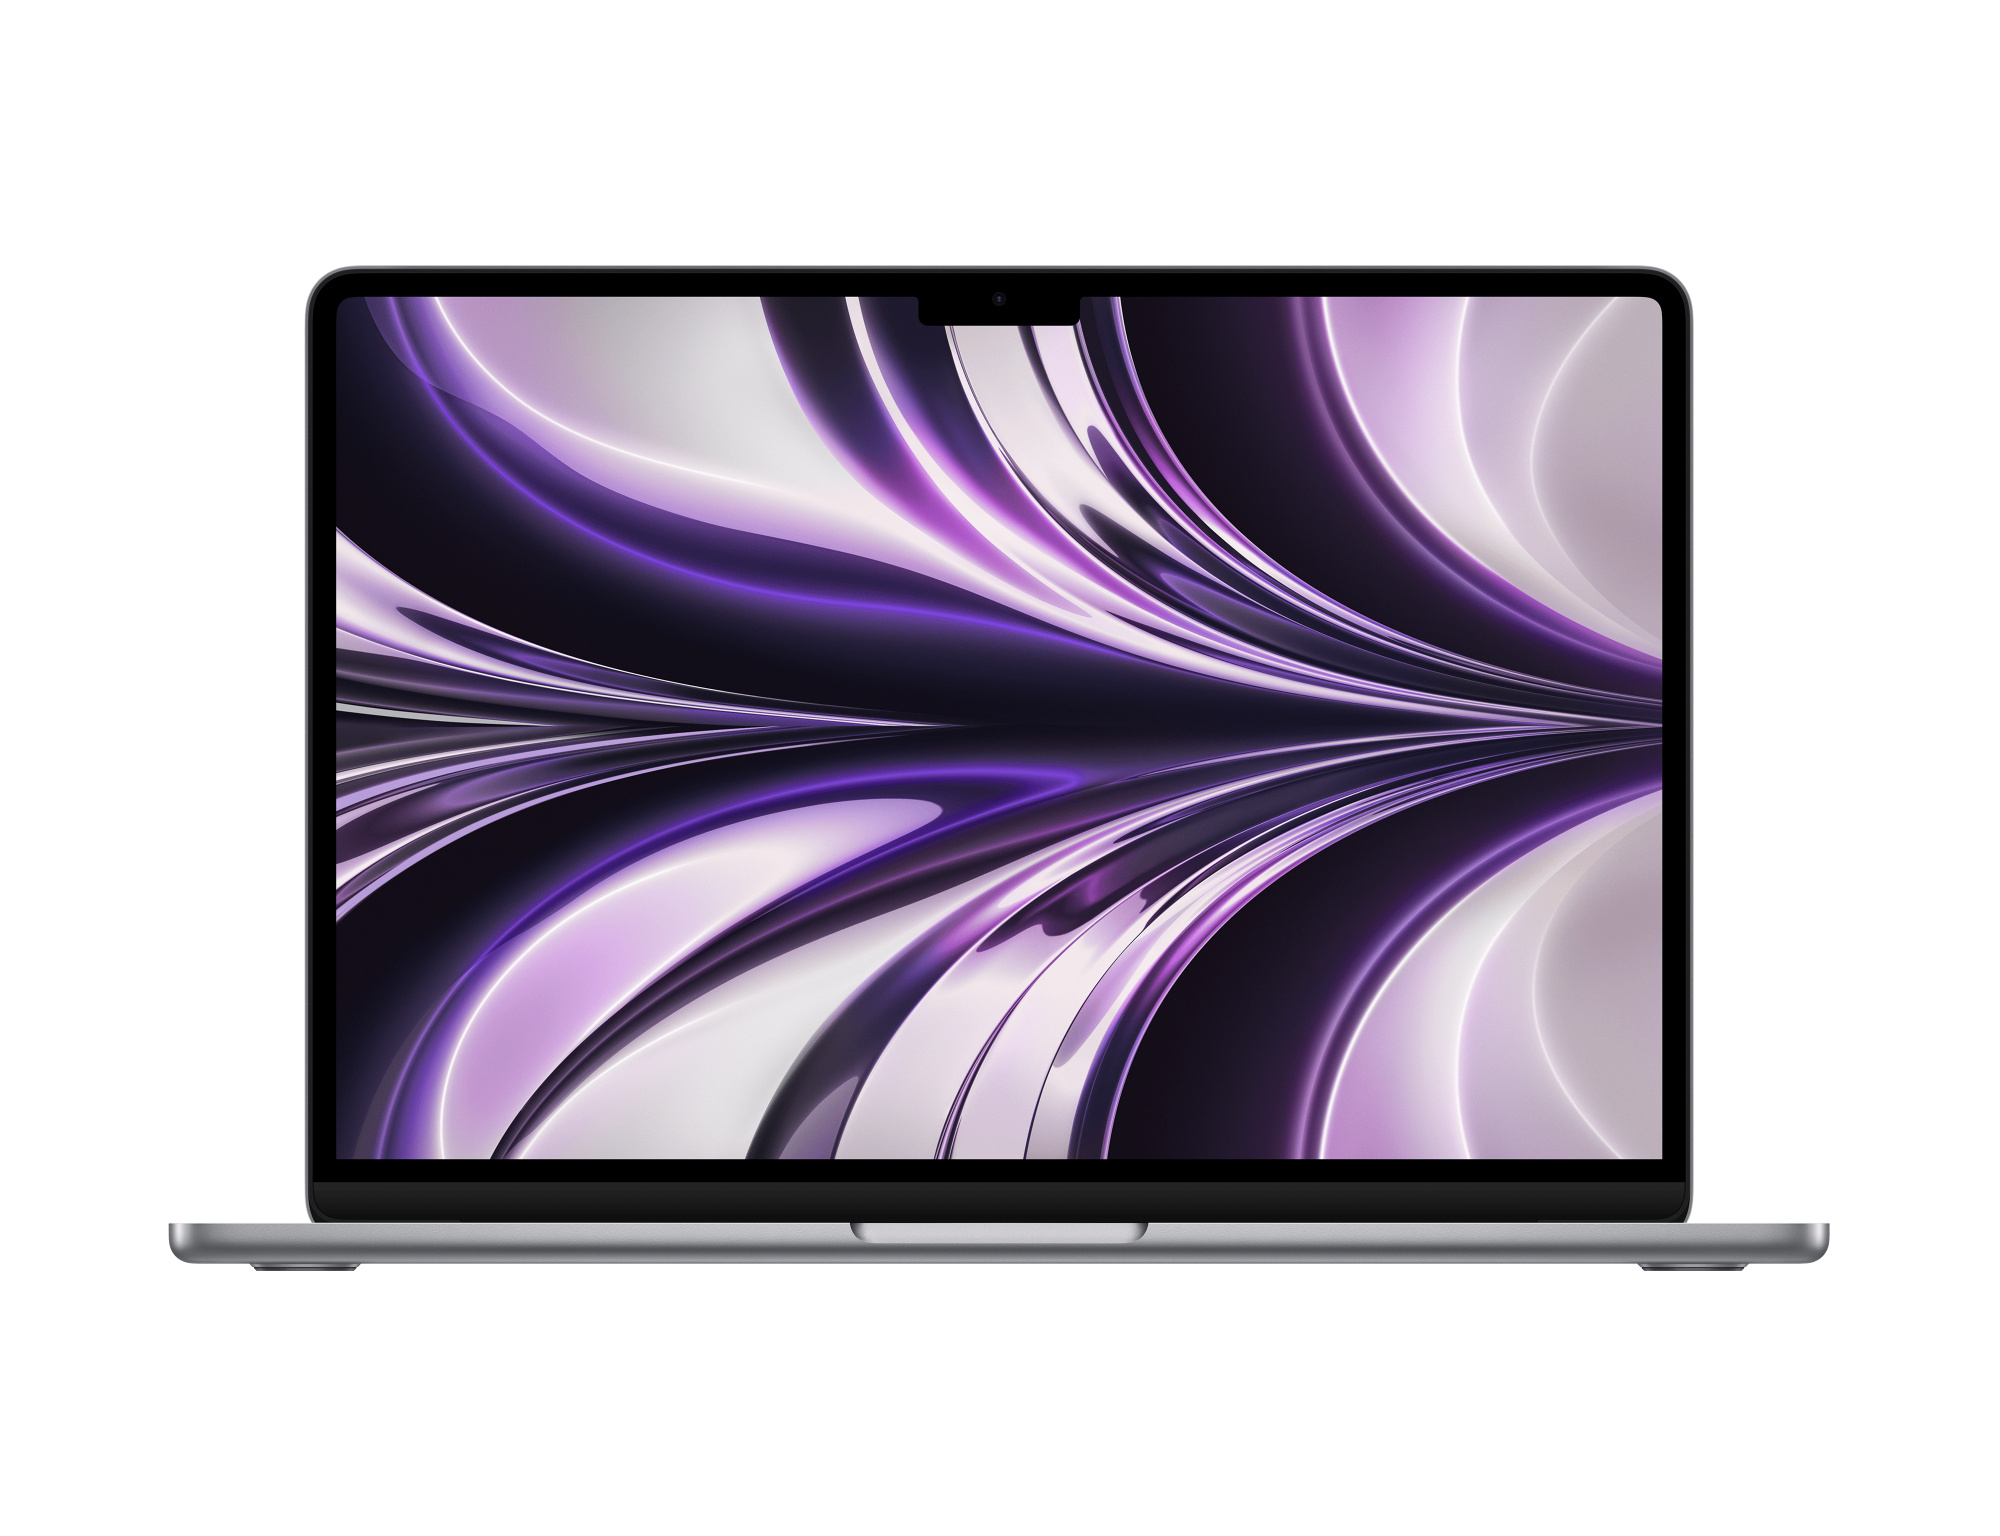 13-inch MacBook Air: Apple M2 chip with 8 core CPU, 8 core GPU, 16 core Neural Engine, 256GB